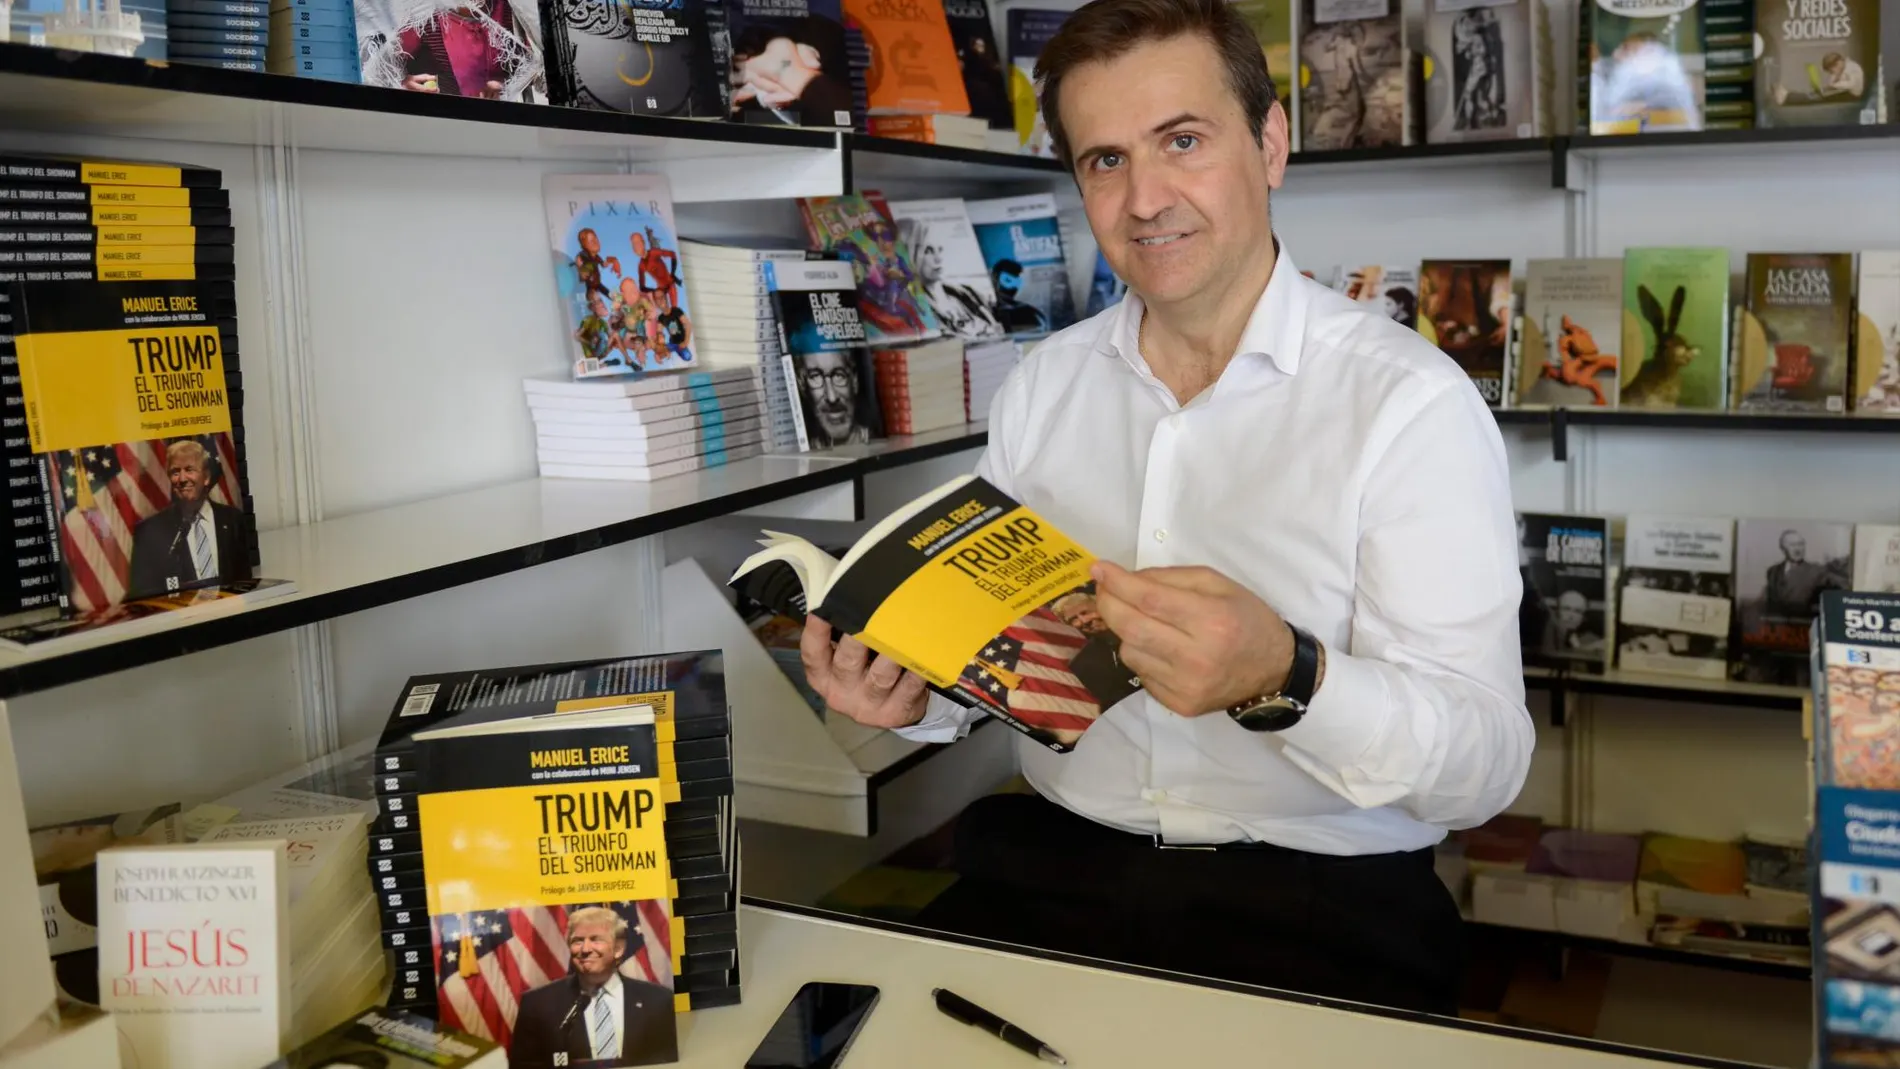 Manuel Erice, durante una firma de ejemplares de su novela “Trump, el triunfo del showman”